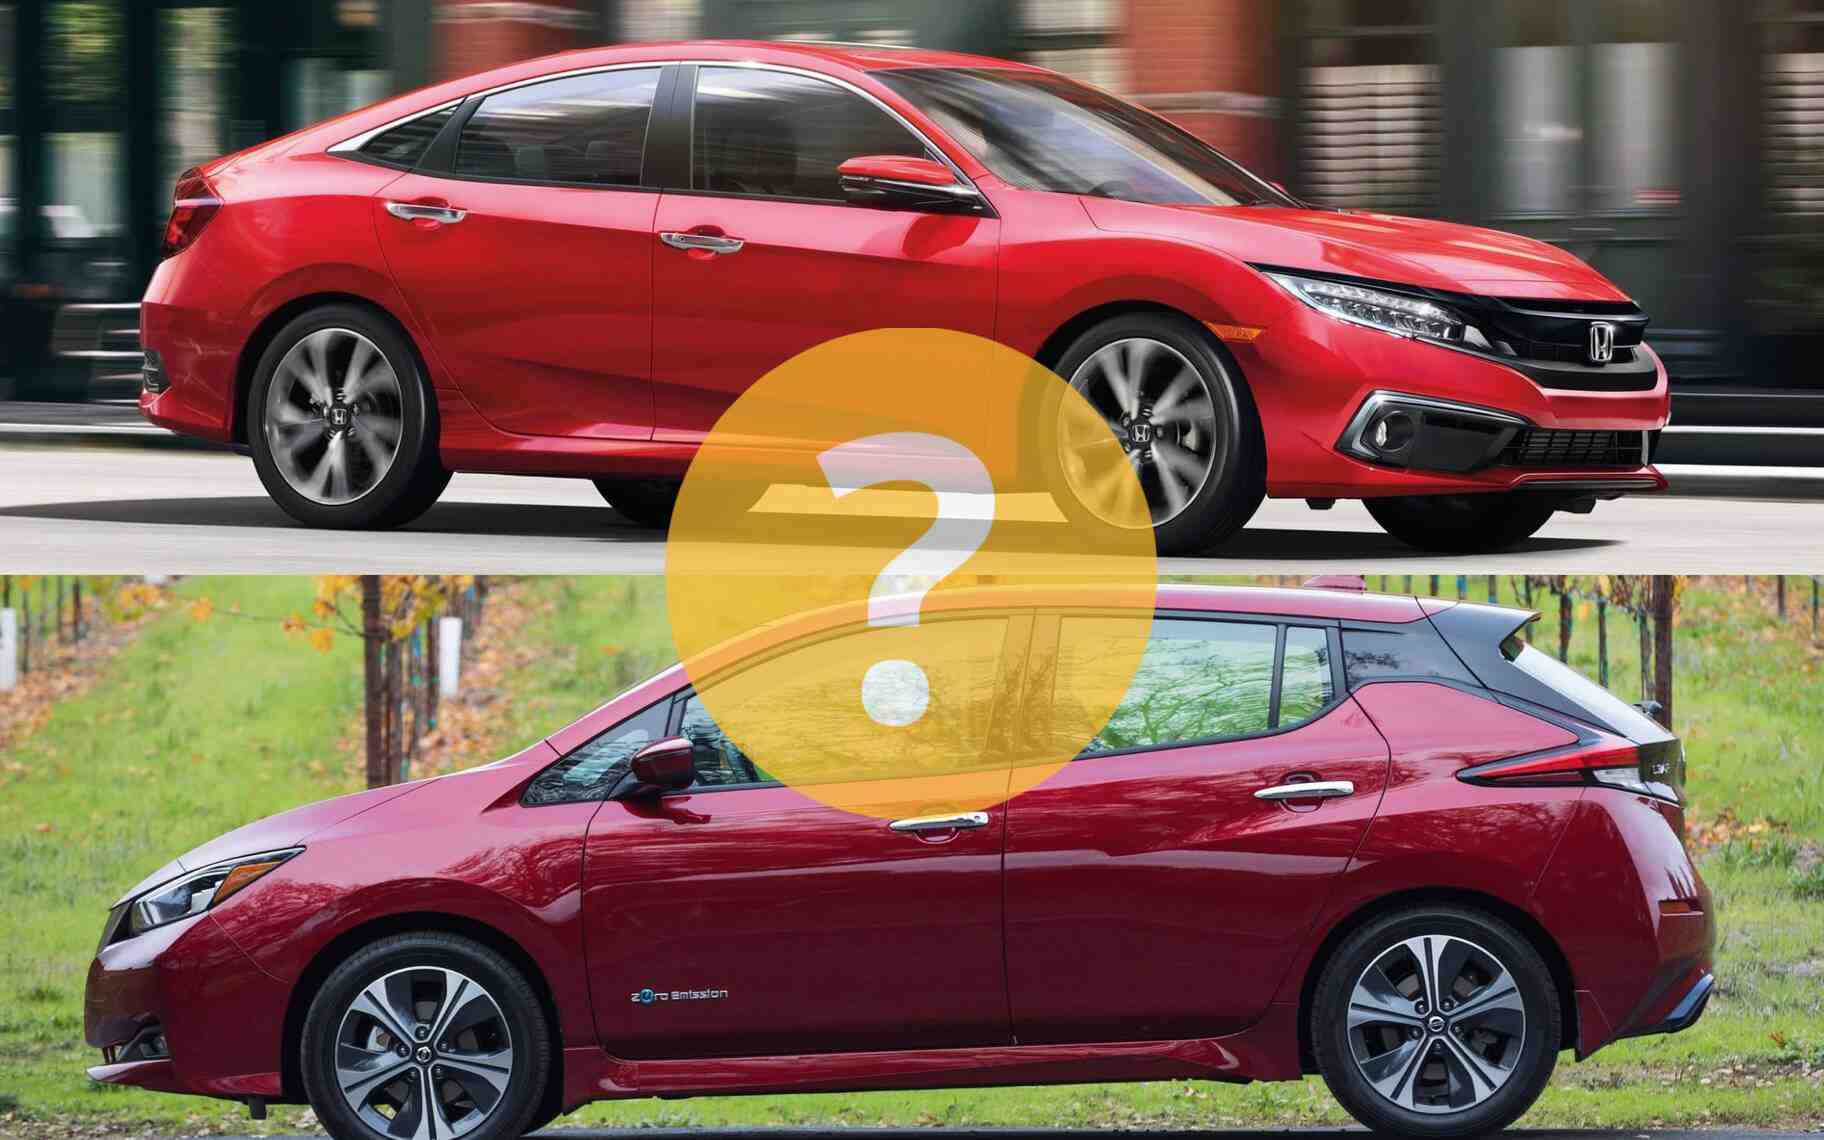 Quelle est la voiture la plus rentable?